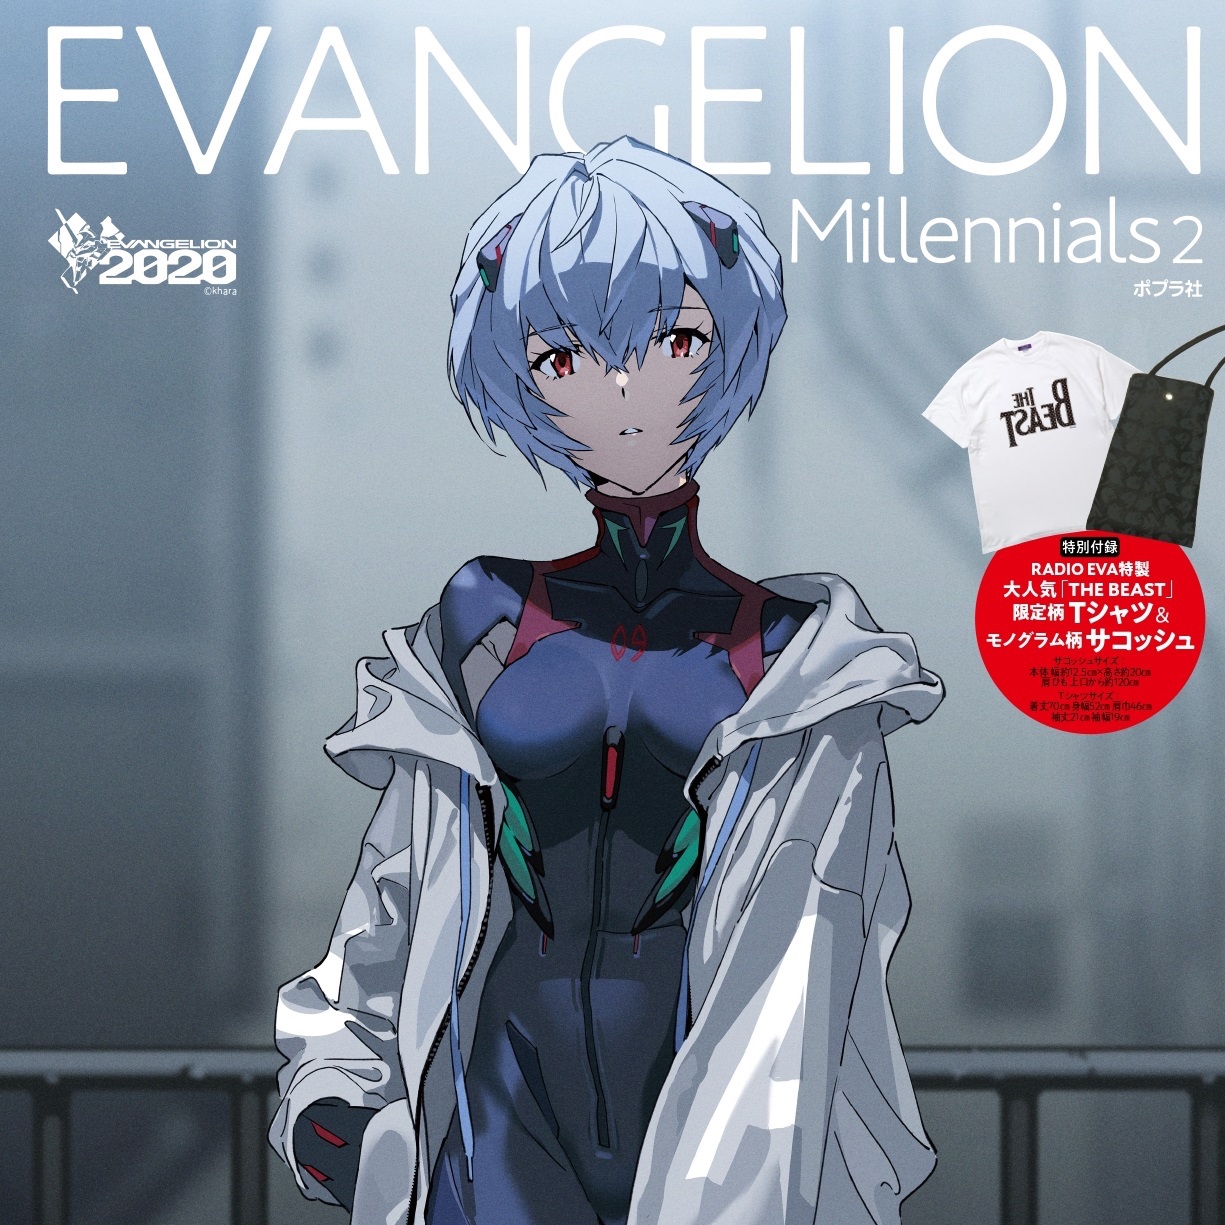 エヴァンゲリオン オフィシャルbook Evangelion Millennials2 9月1日発売 Radio Evaコラボグッズが付属 Game Watch